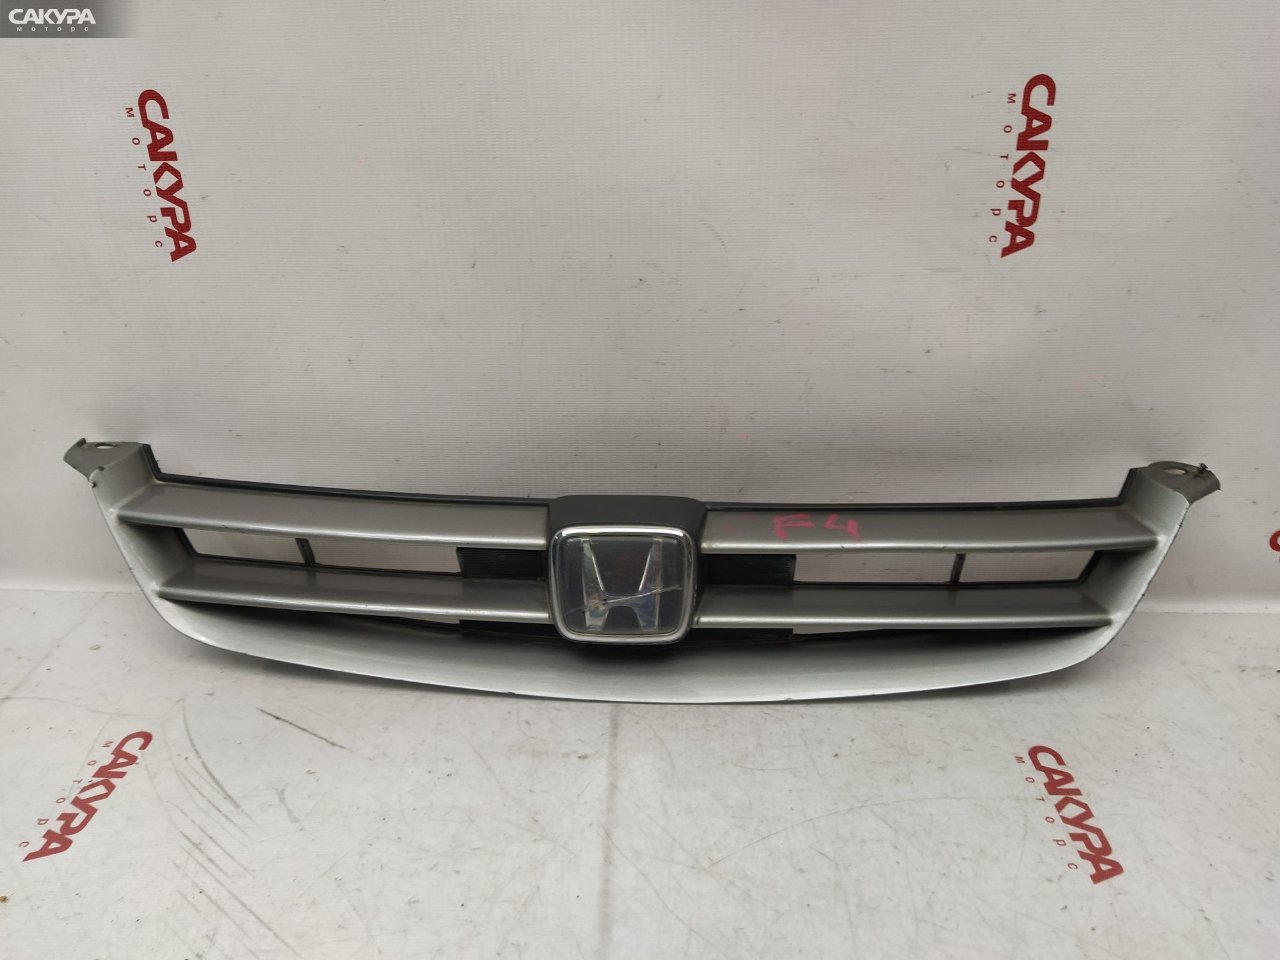 Решетка радиатора Honda Accord CF4 F20B: купить в Сакура Красноярск.